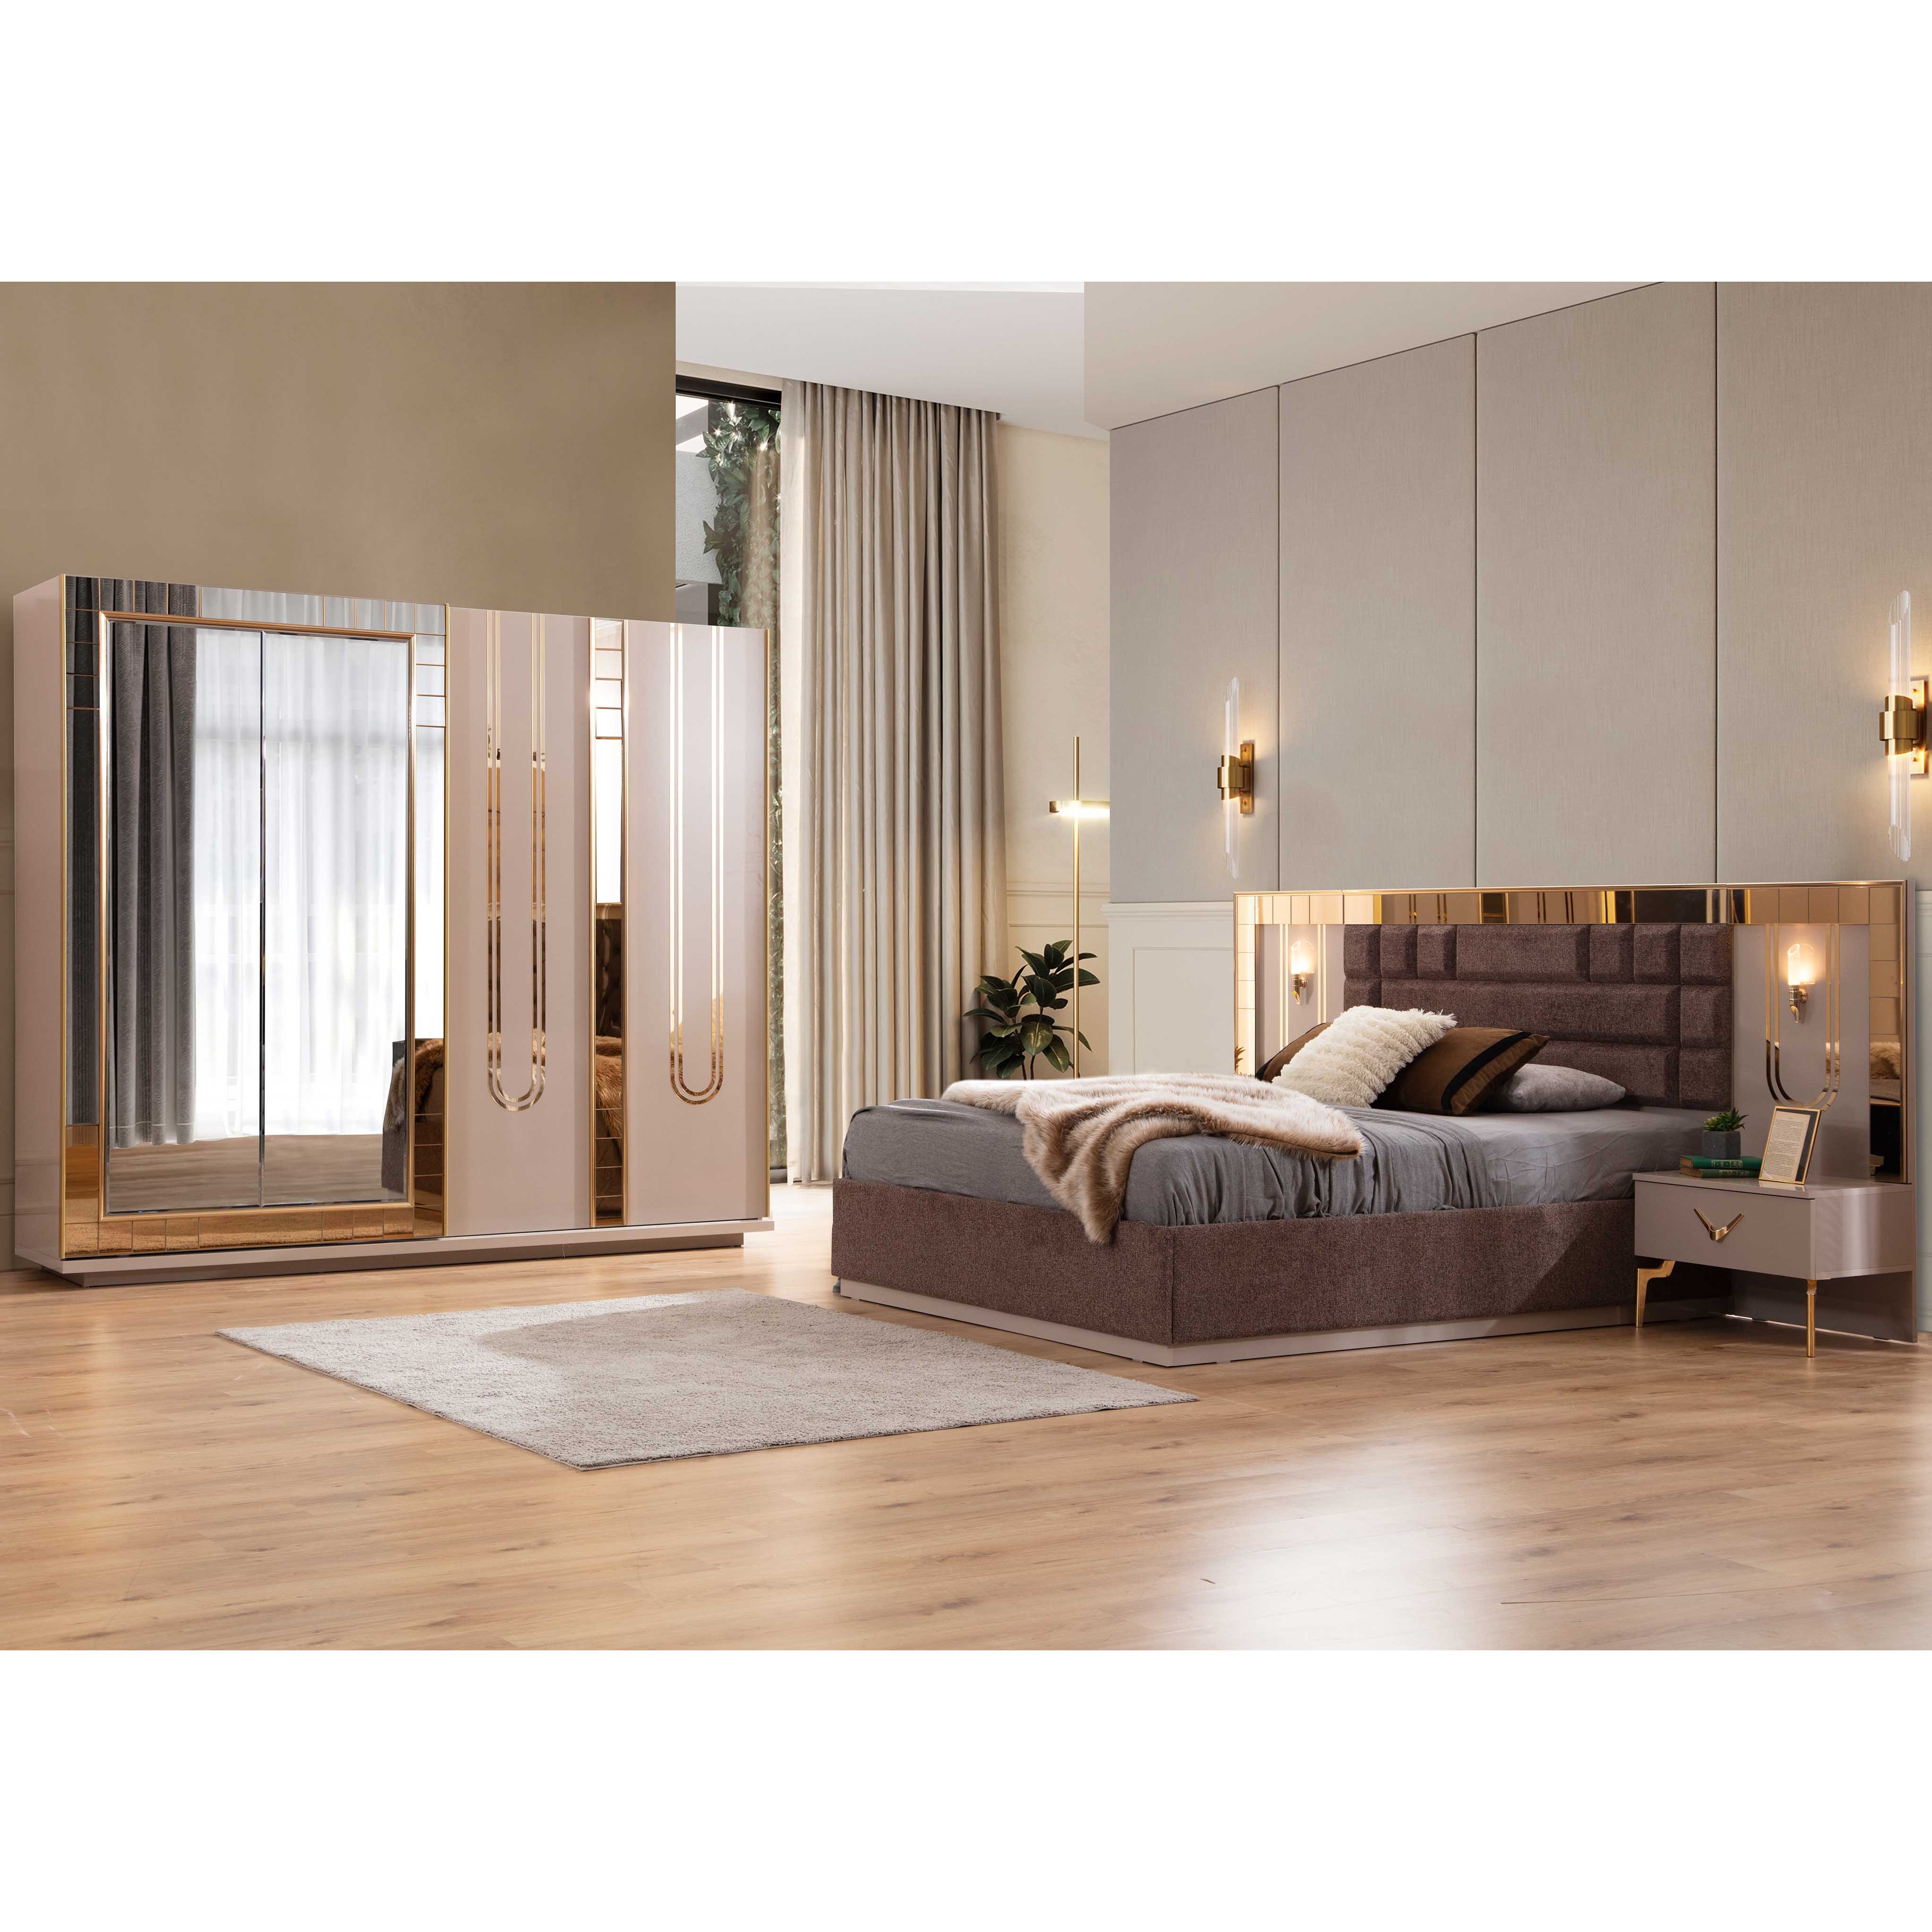 Harmoni Bedroom (Bed With Storage 160x200cm)